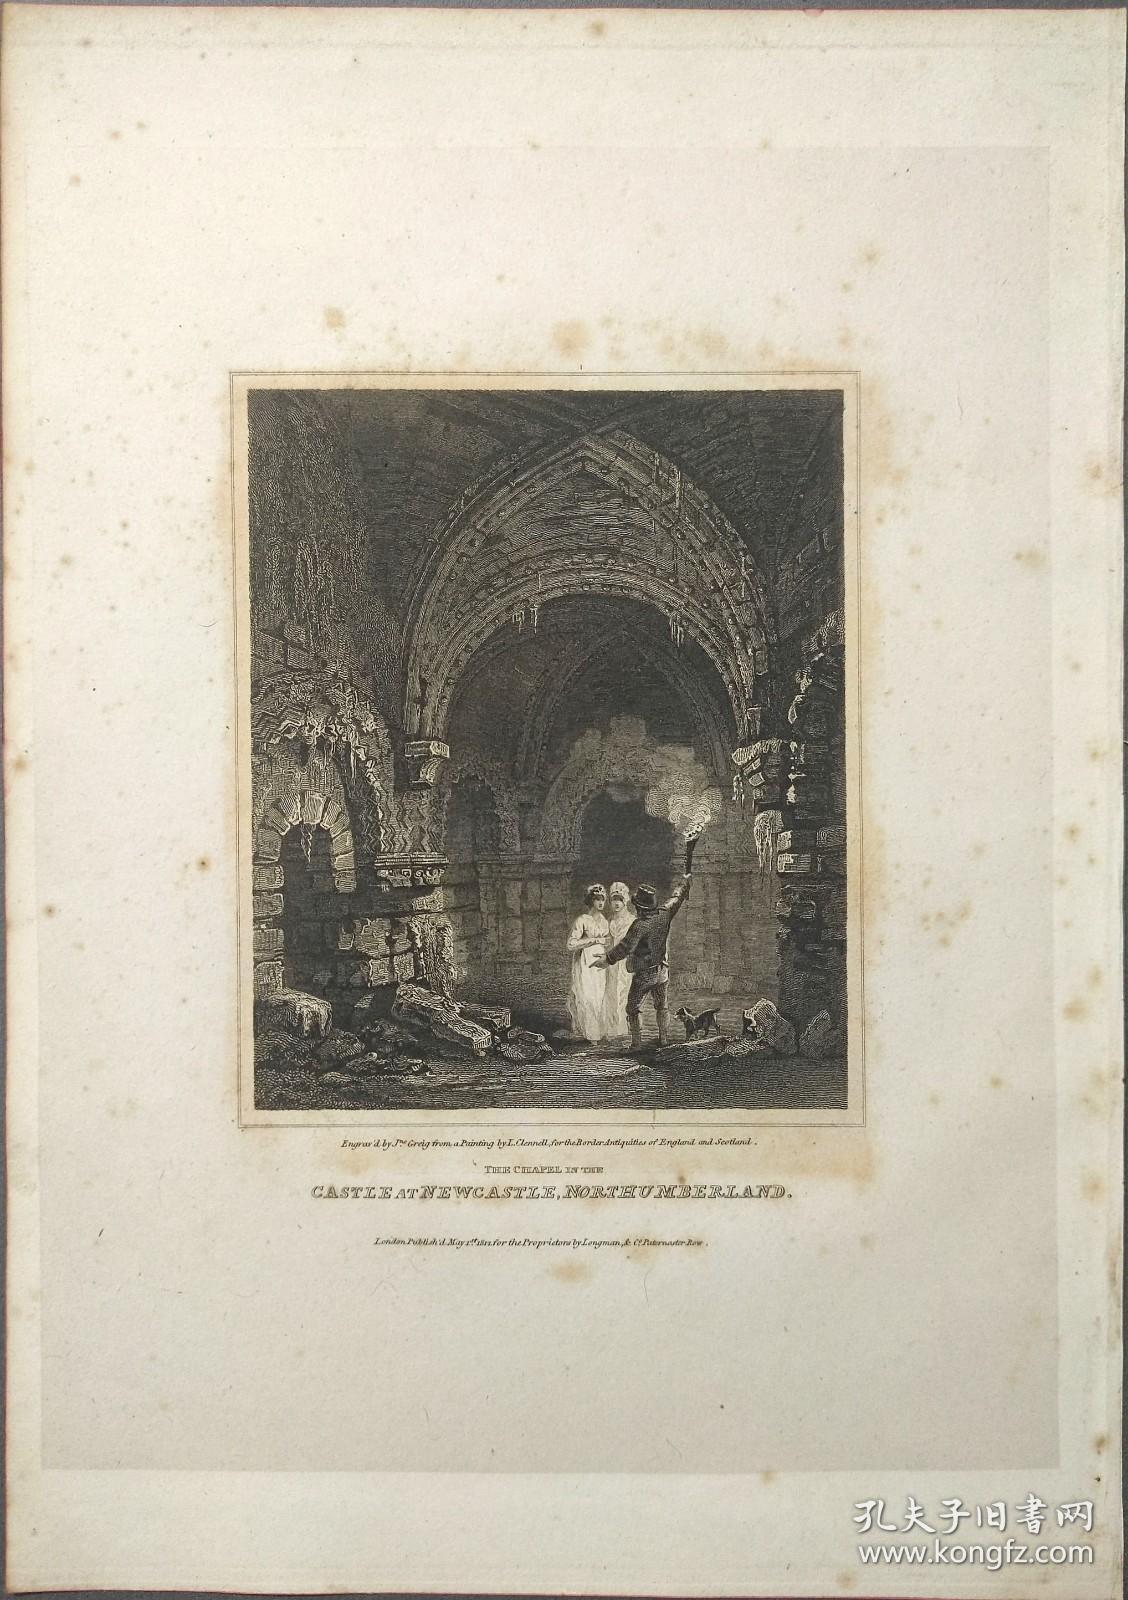 1814年 钢版画 雕刻凹版 中式拓裱《纽卡斯尔城堡 CASTLE AT NEWCASTLE,NORTHUM BERLAND》-出自 英国艺术家 卢克·克莱内尔（LUKE CLENNELL）作品，英国版画家 约翰-格里格 （John Greig）雕刻印制； 版画印制于印度纸，中式拓裱于皇室纸上(super royal paper)，纸张37x26cm